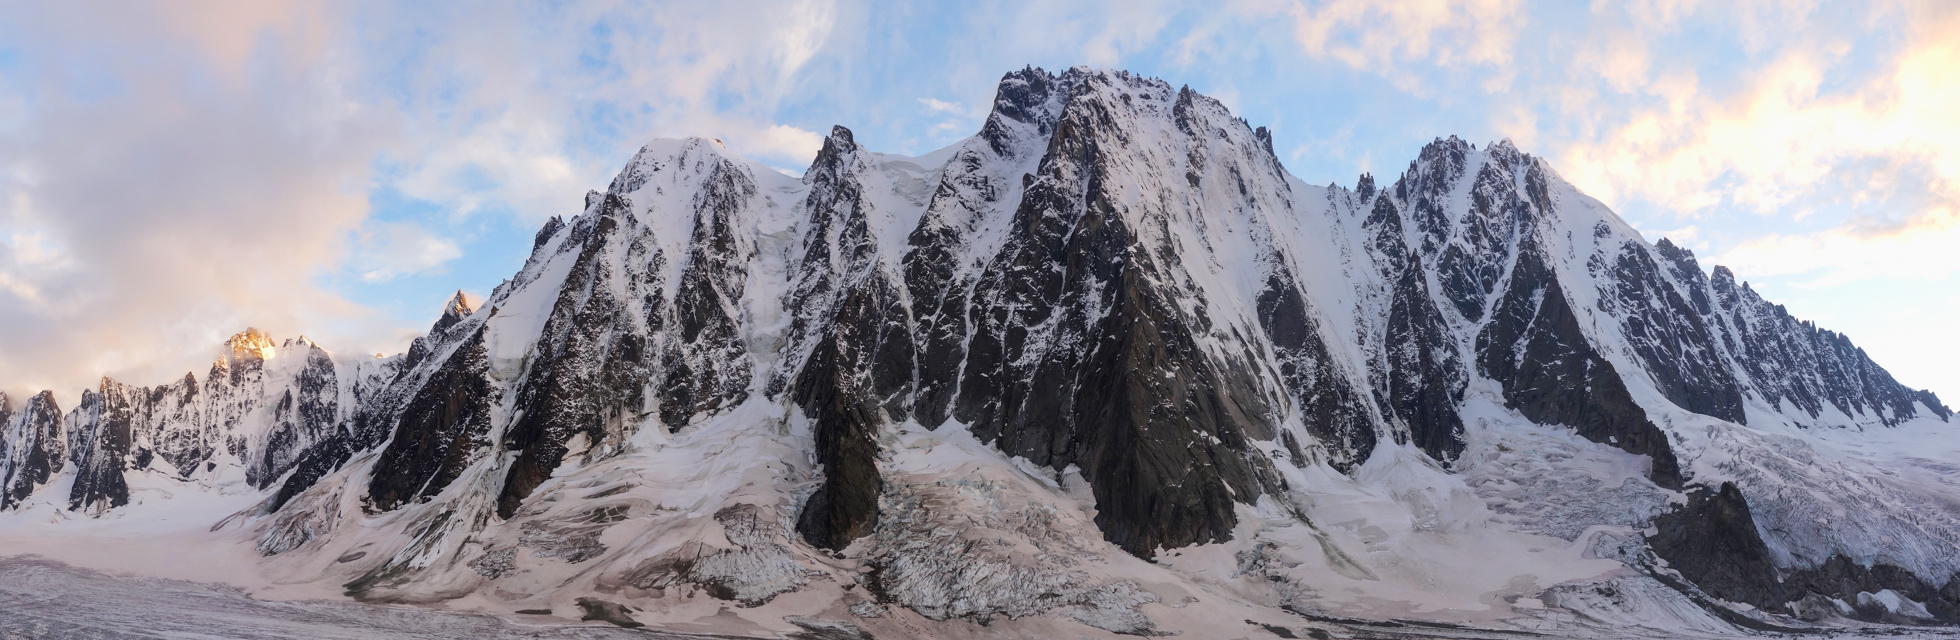 alpine climbing north faces argentiere aiguille verte les courtes les droites